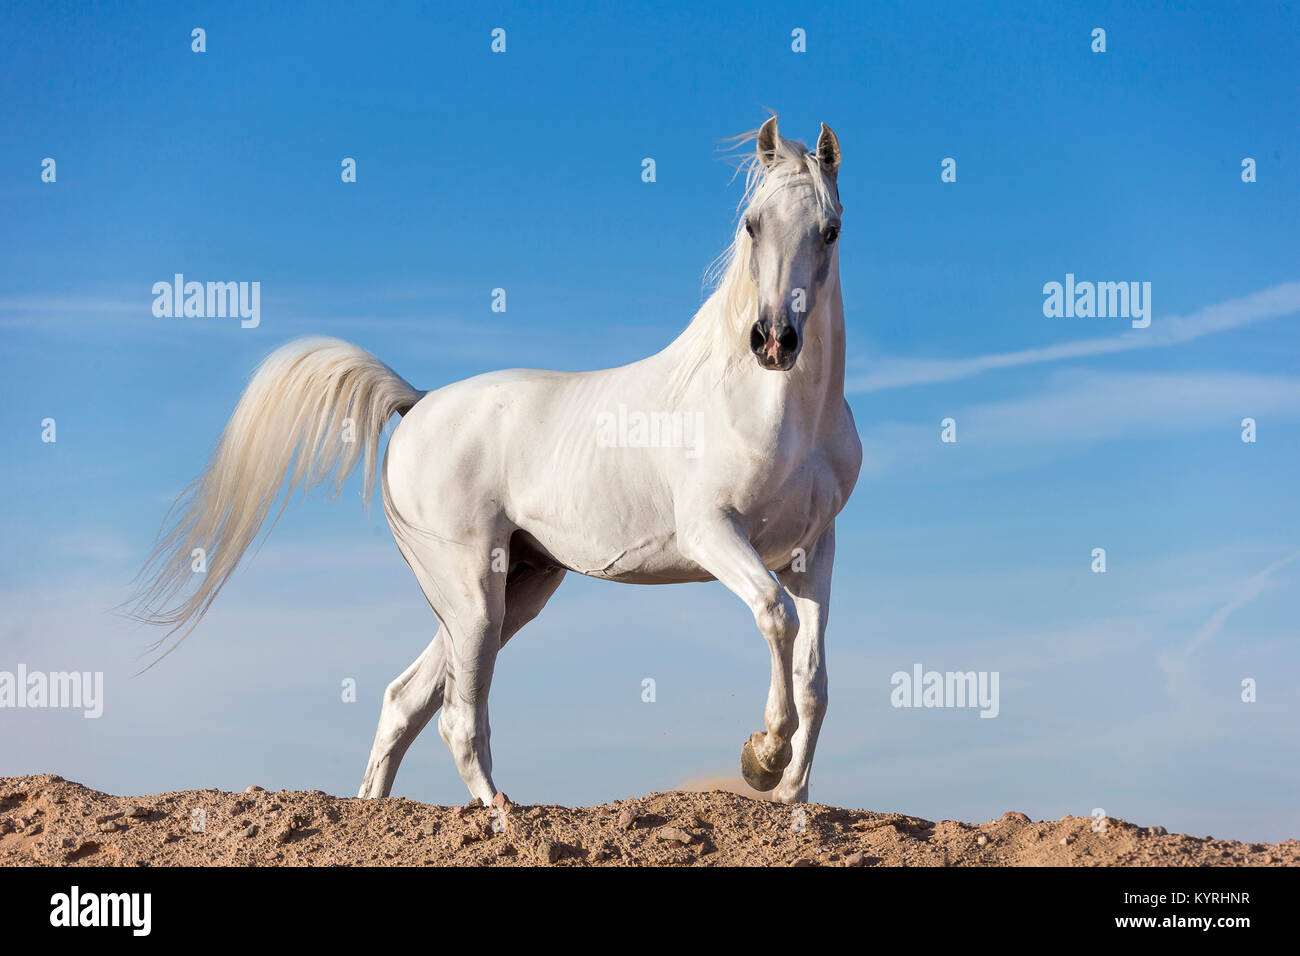 Arabische Pferd. Graue Hengst zu Fuß auf einer Düne. Ägypten. Stockfoto